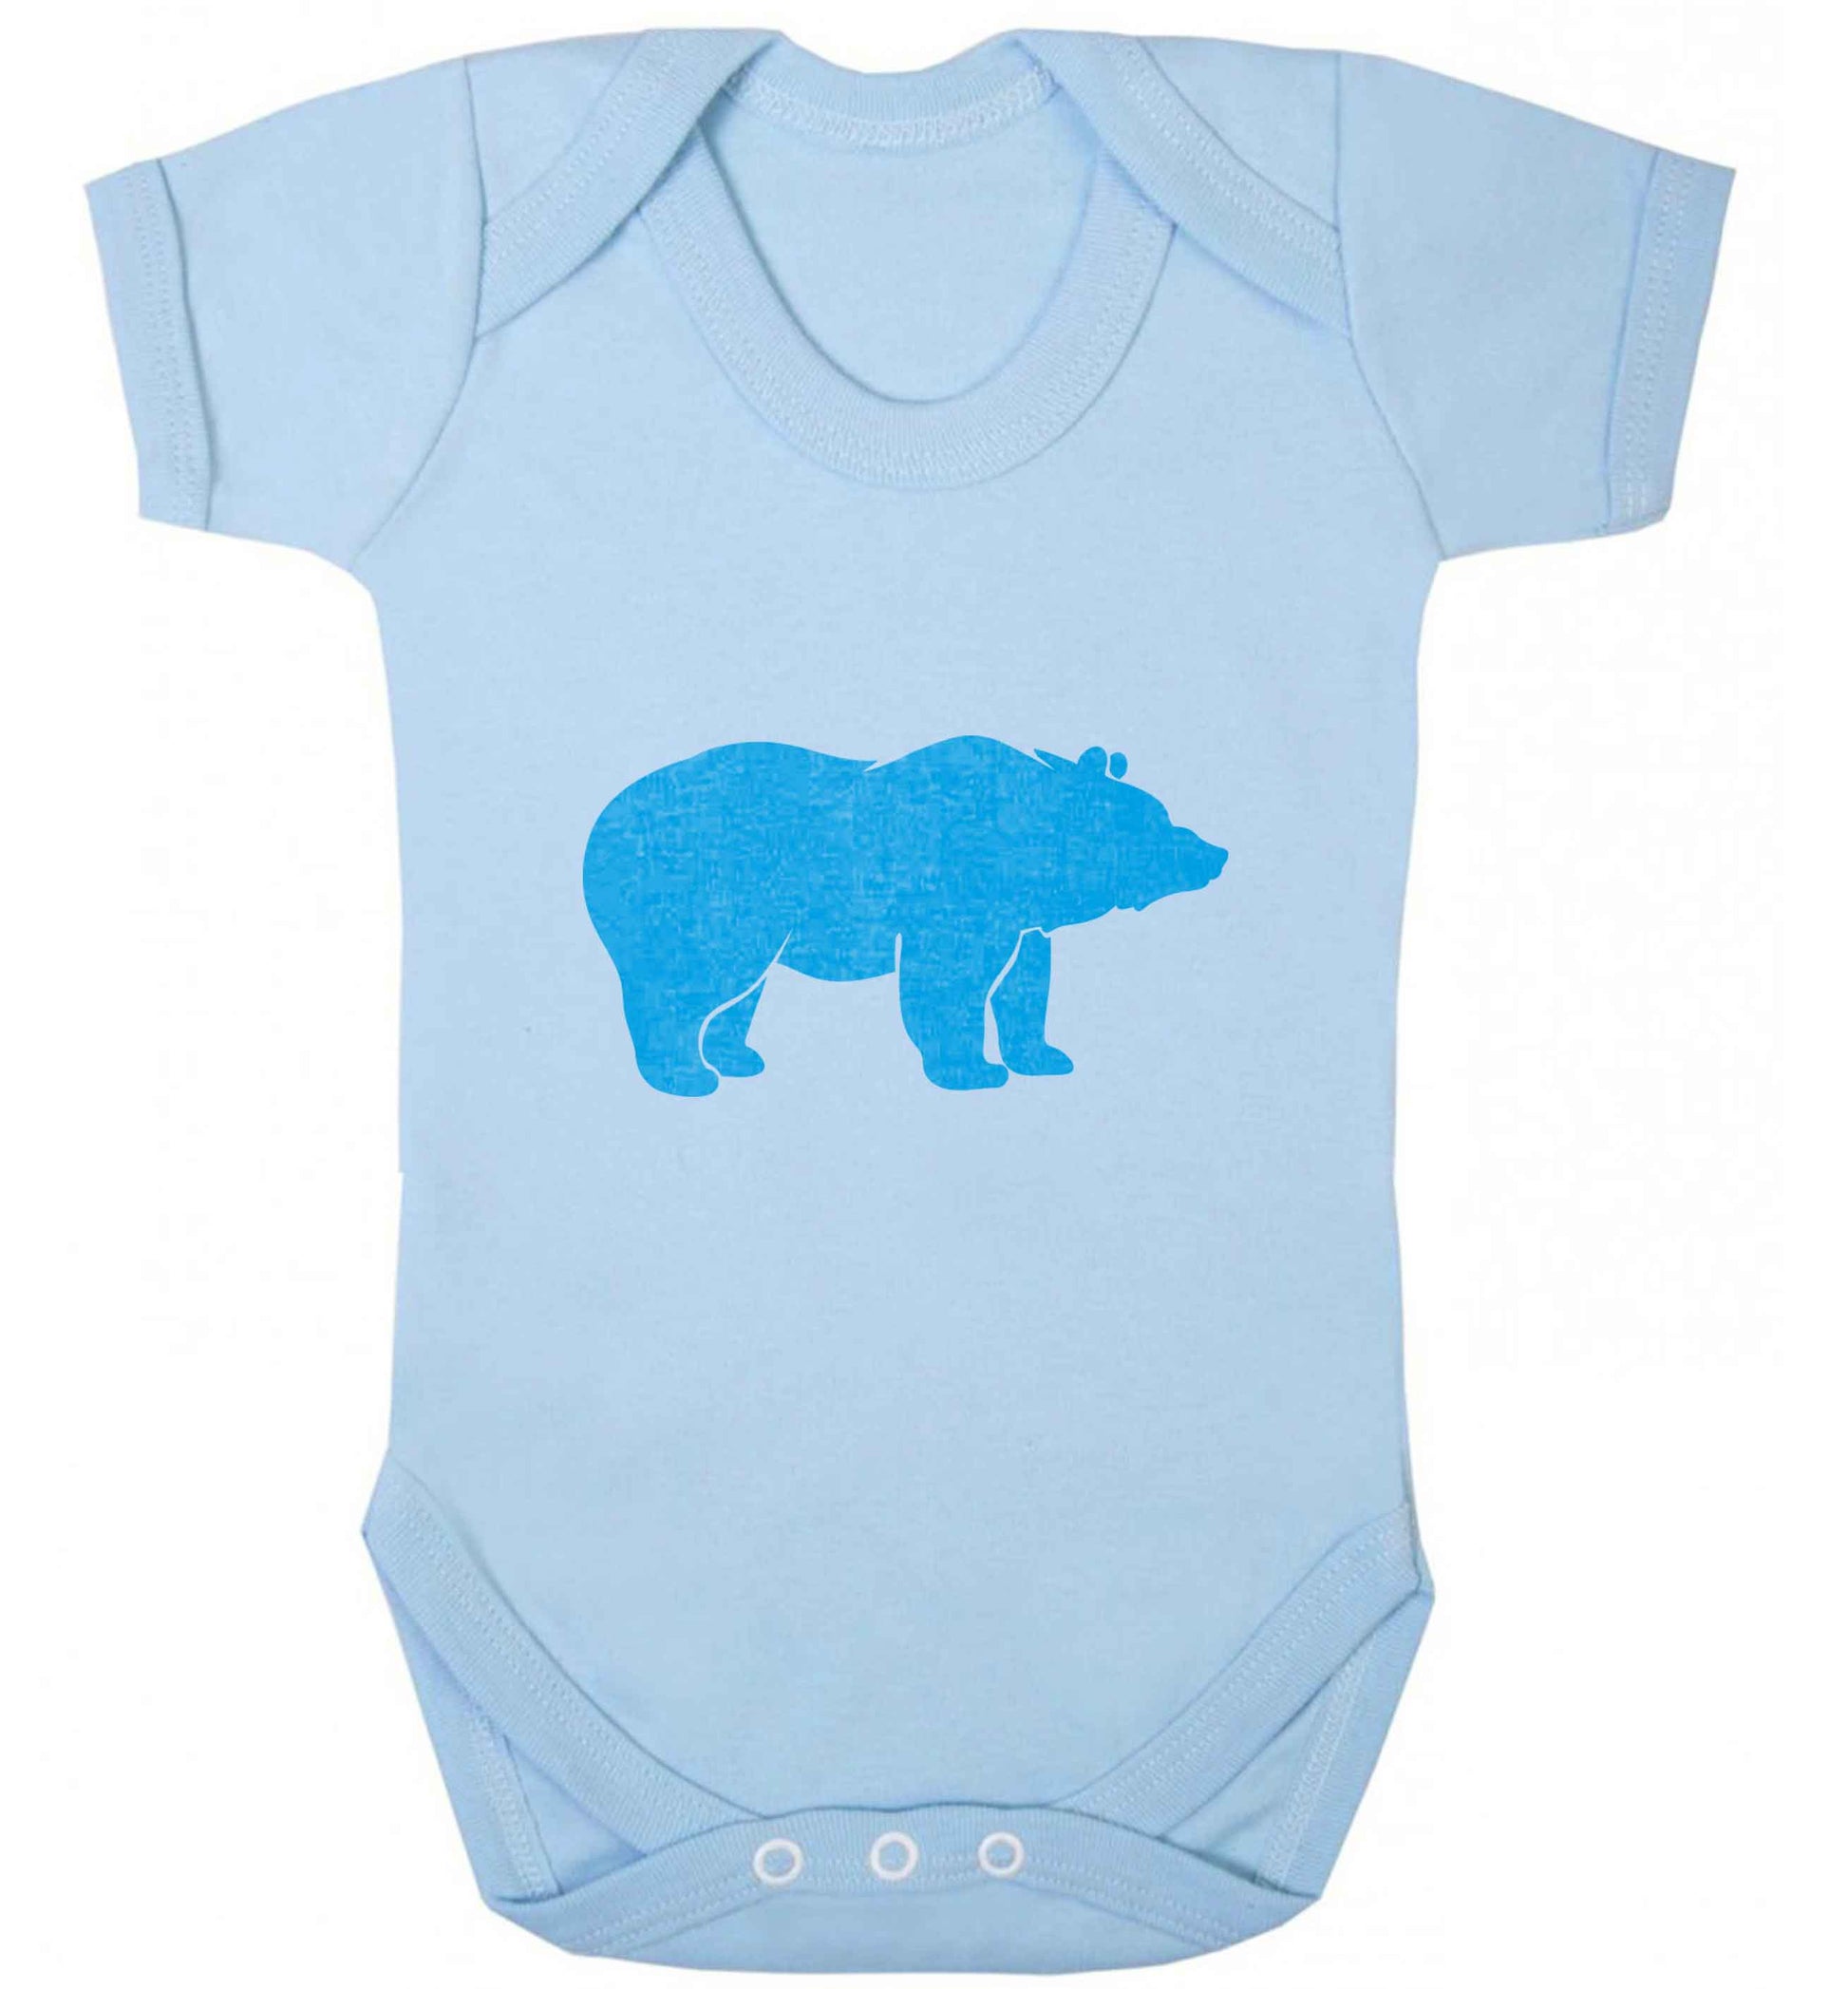 Blue bear baby vest pale blue 18-24 months